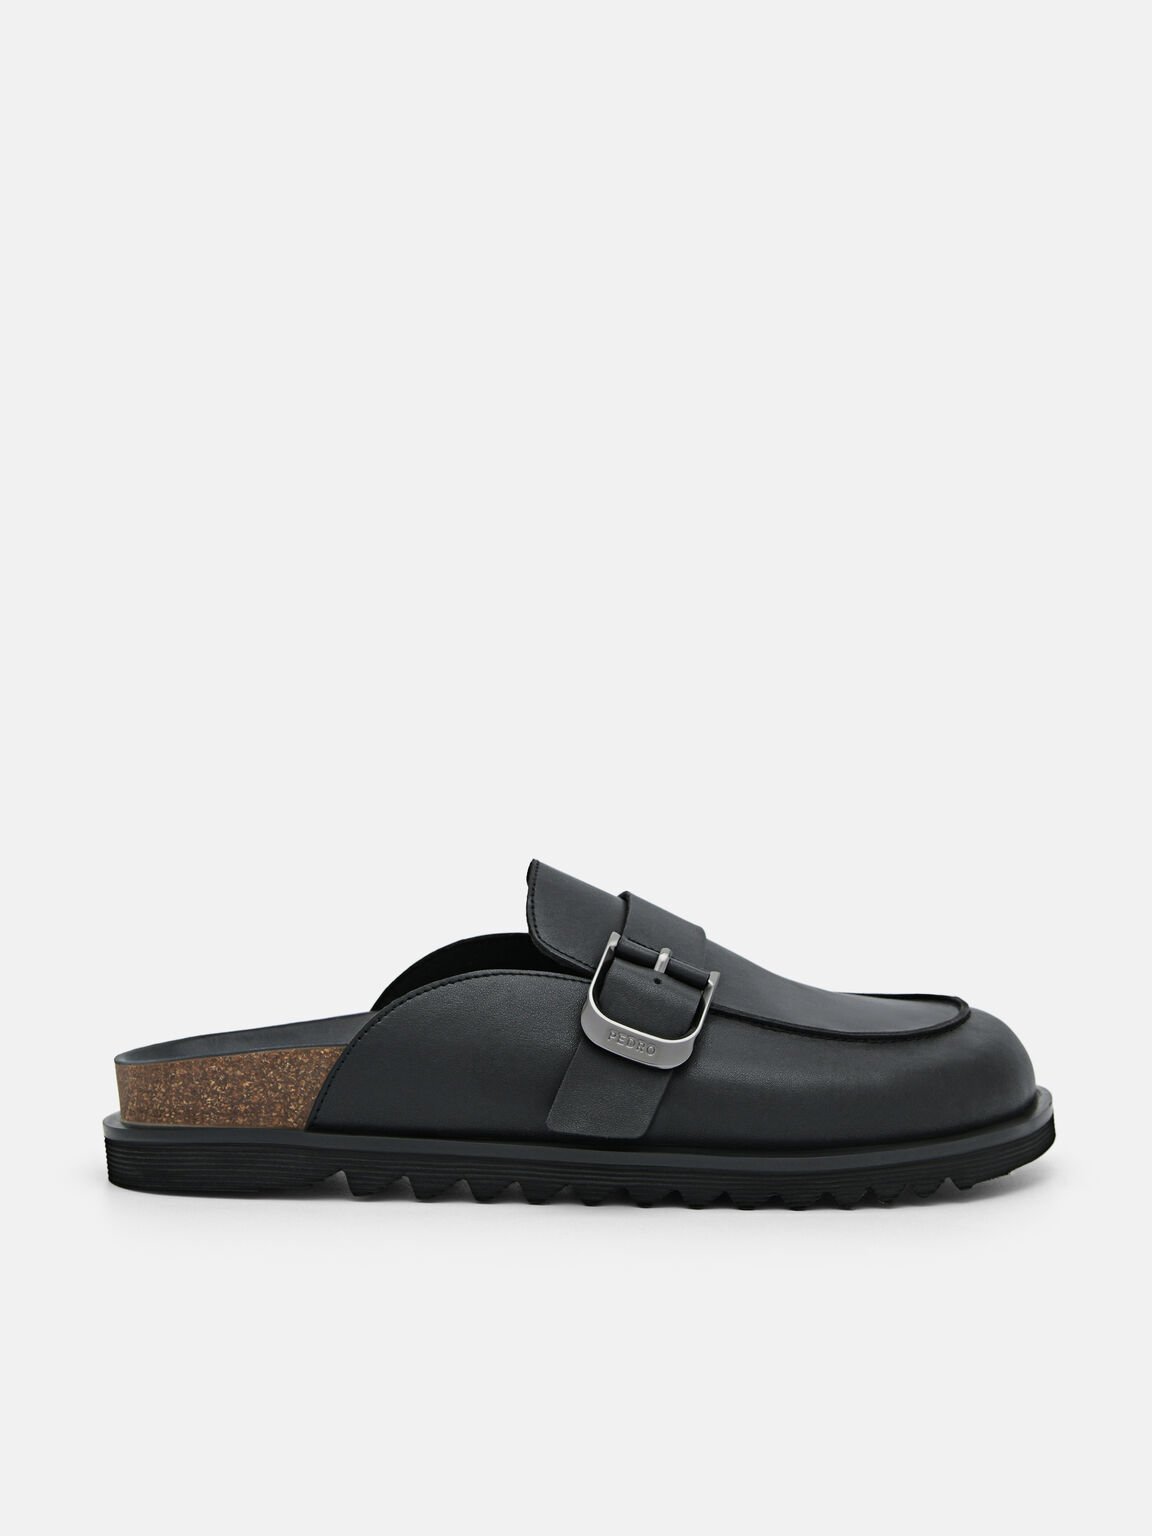 Helix Slip-On Sandals, Black, hi-res